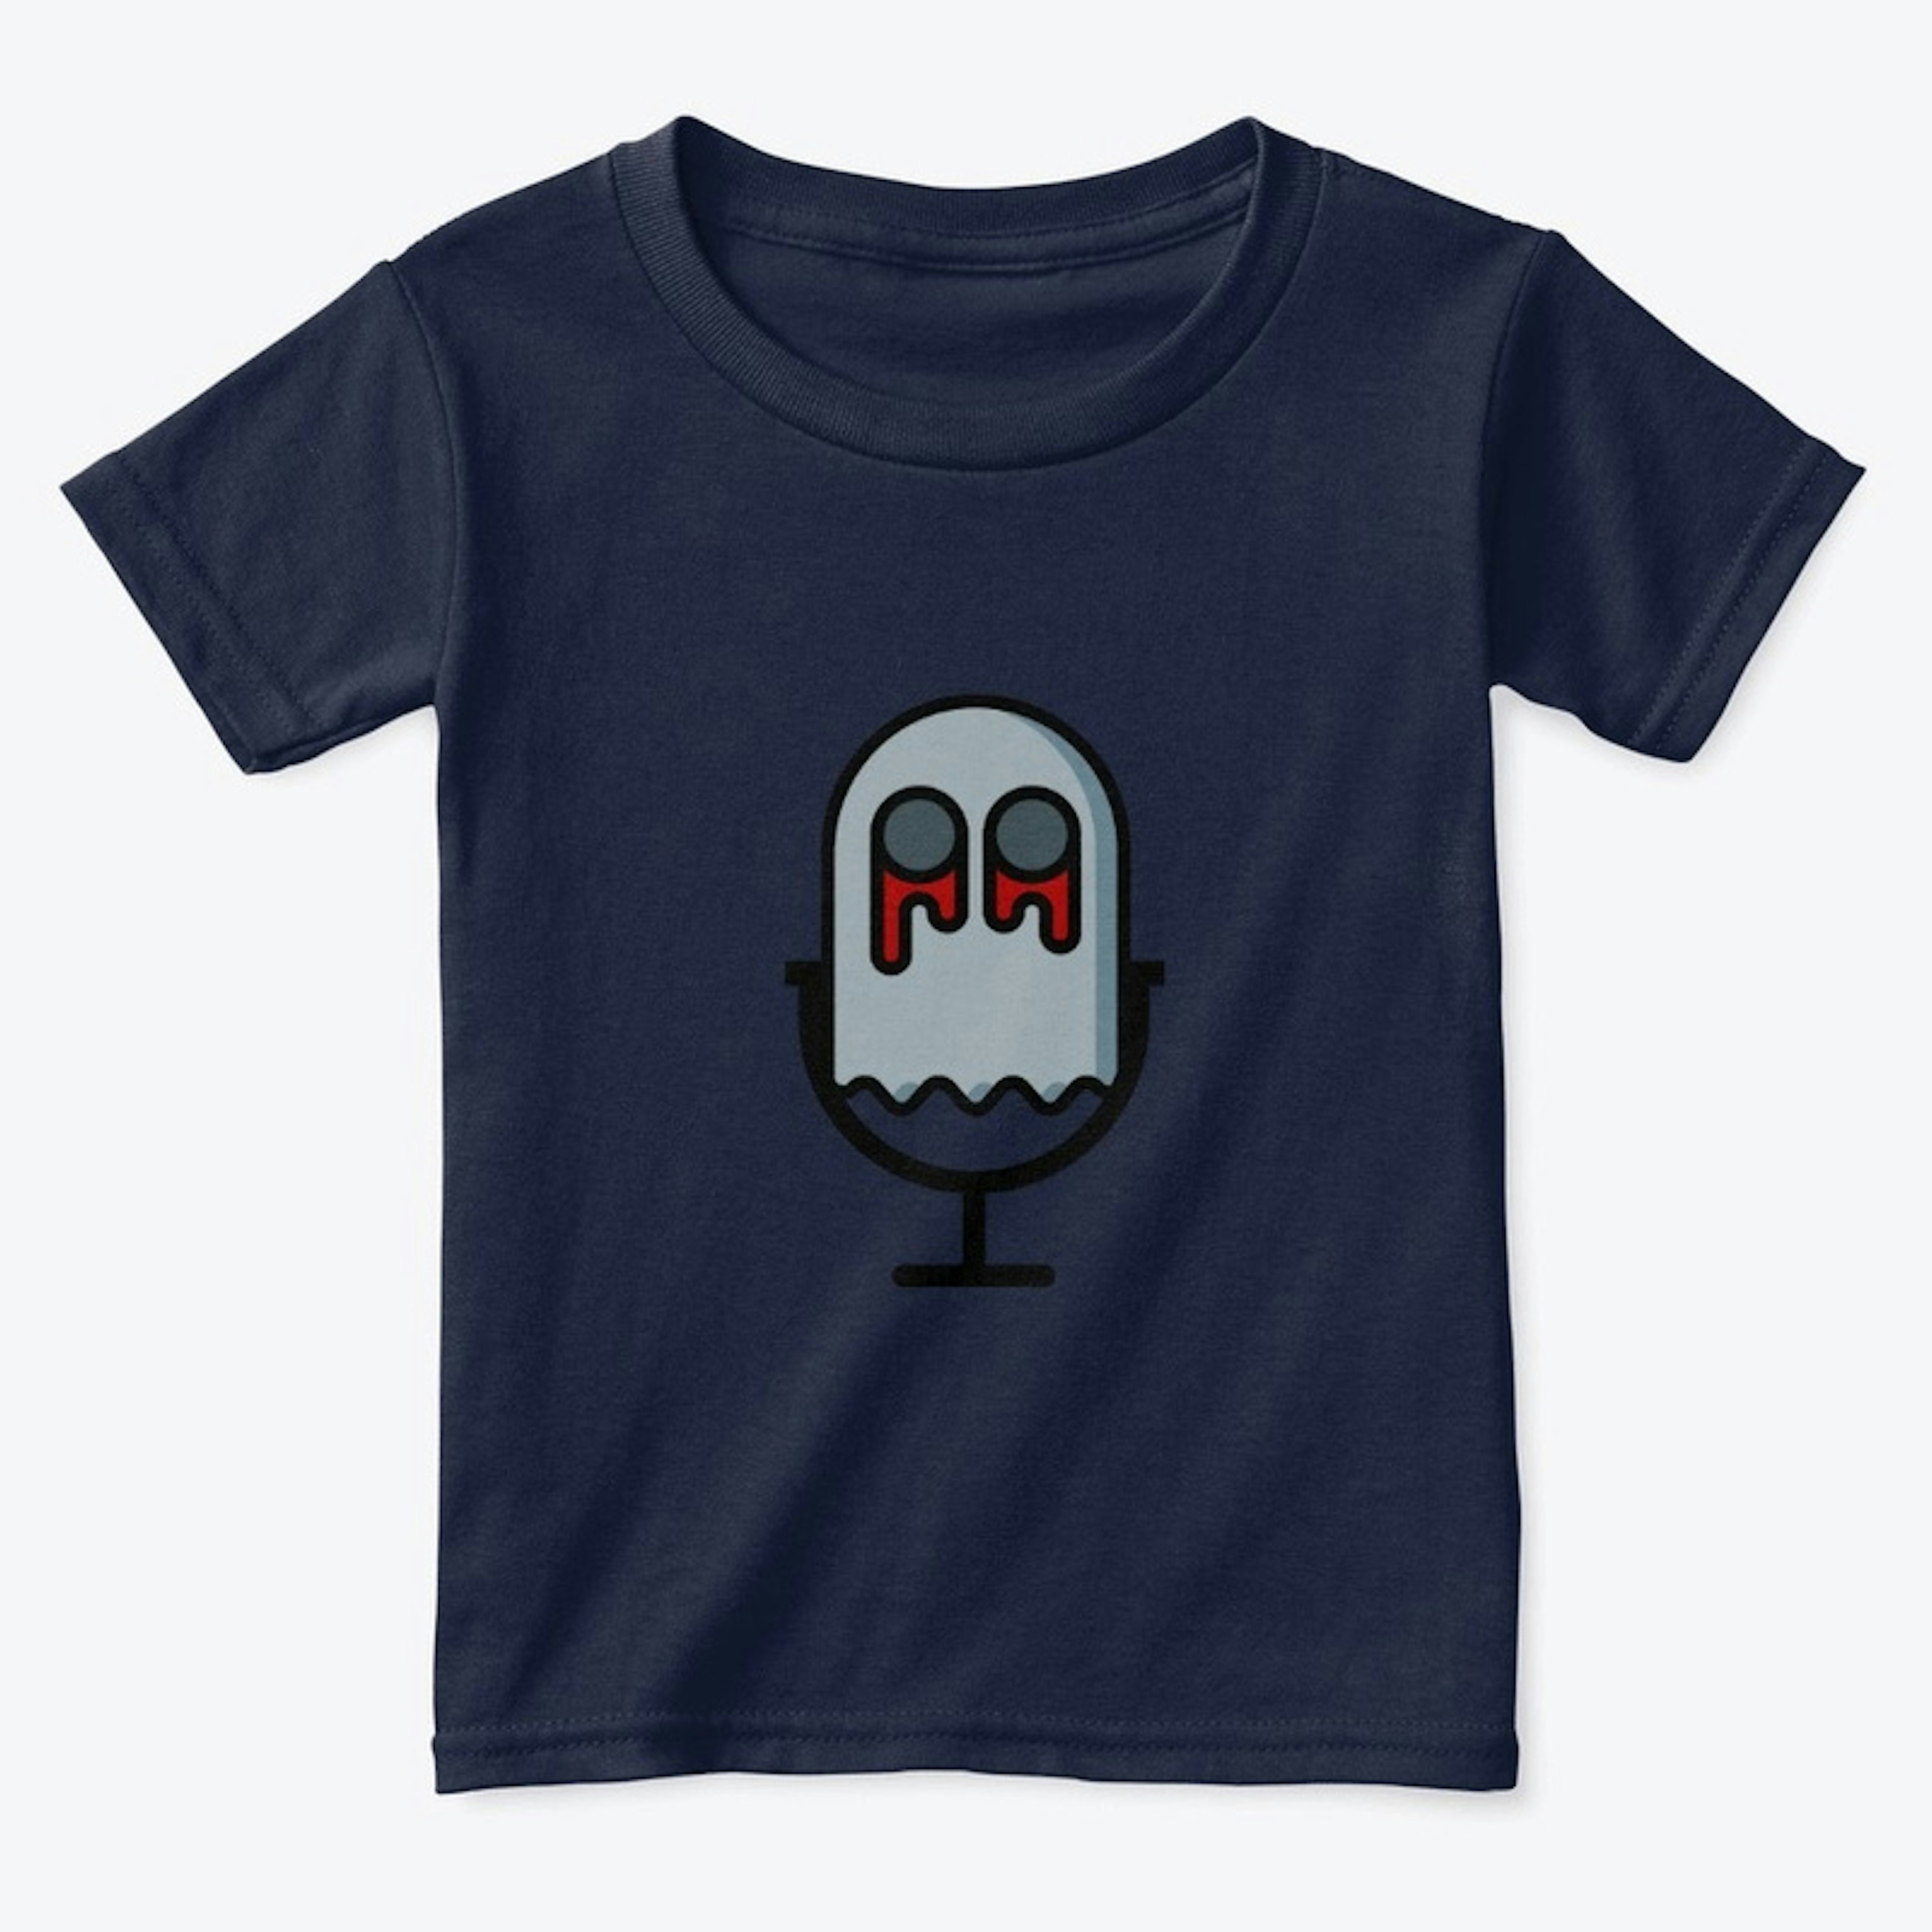 Ghost Mic Toddler Shirt